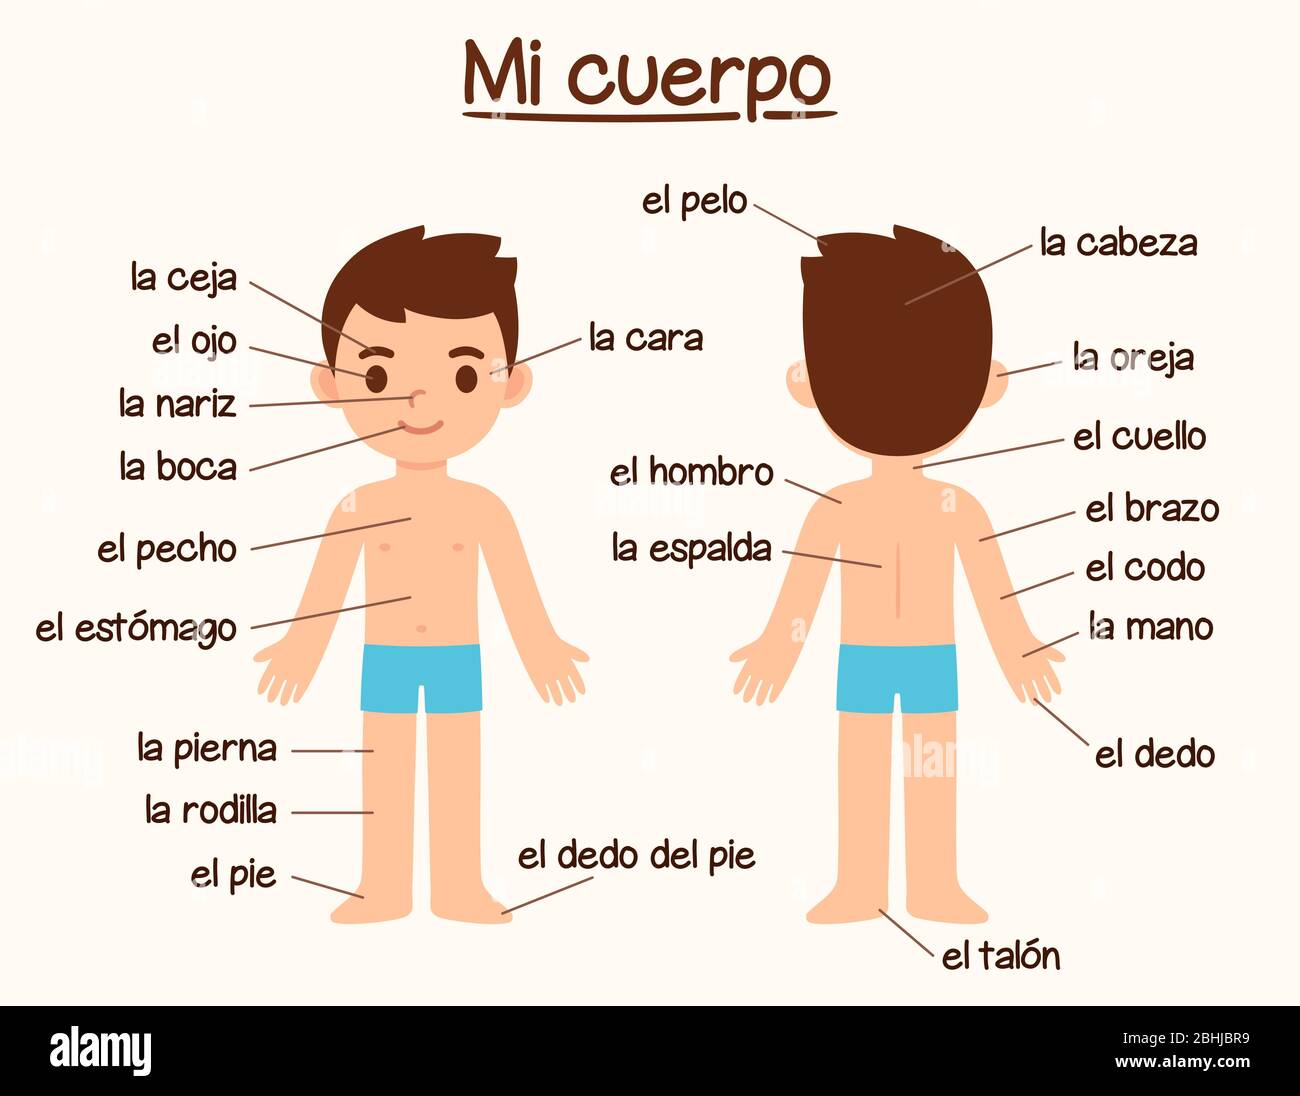 Mi Cuerpo (il mio corpo), diagramma delle parti del corpo umano in